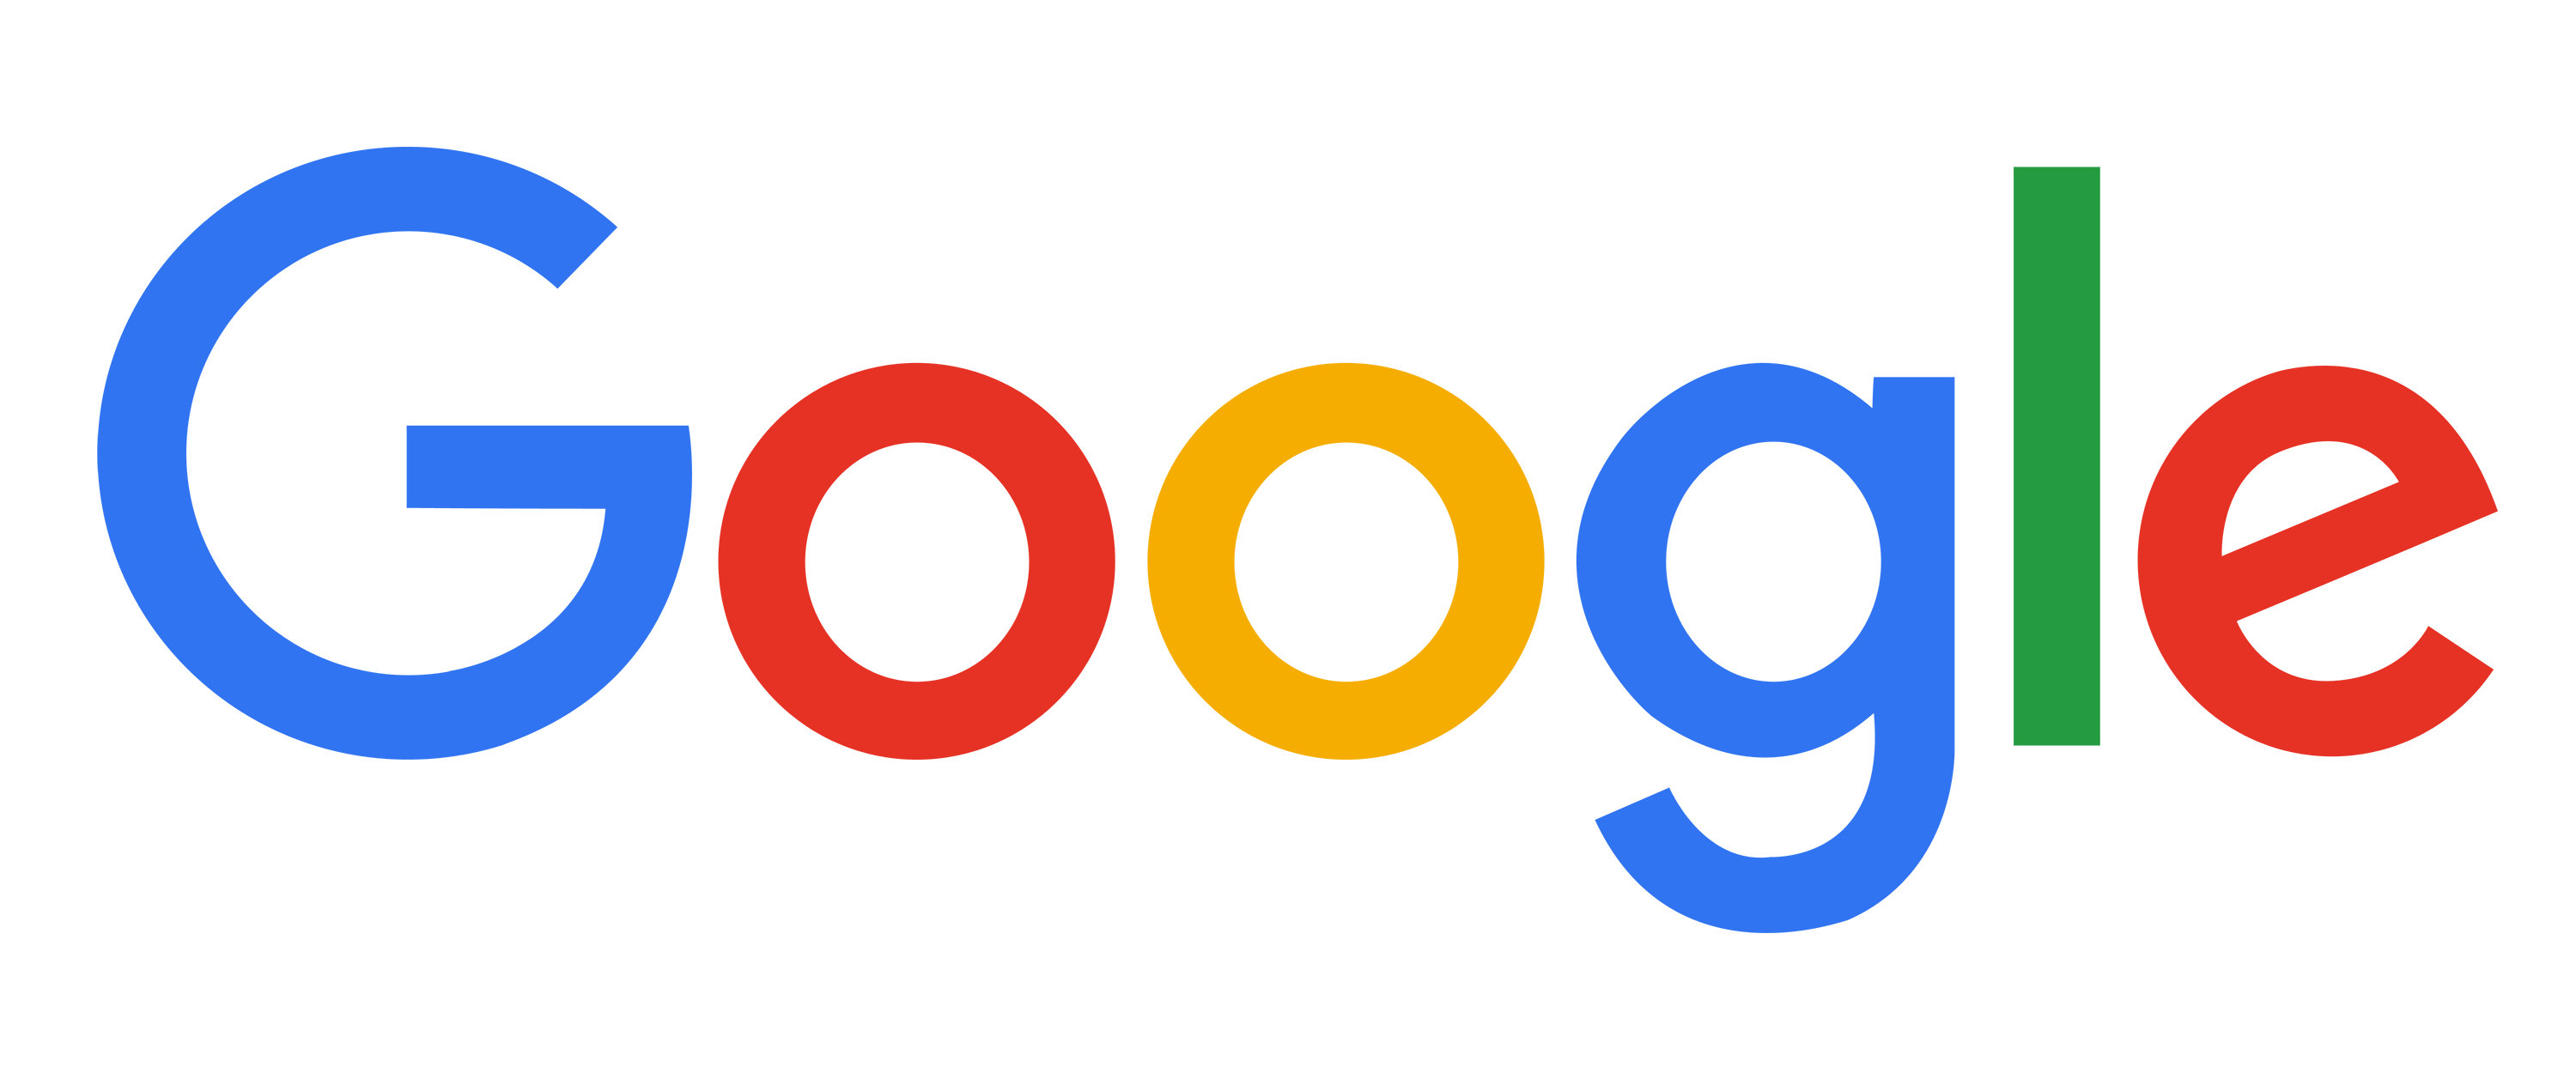 谷歌标志